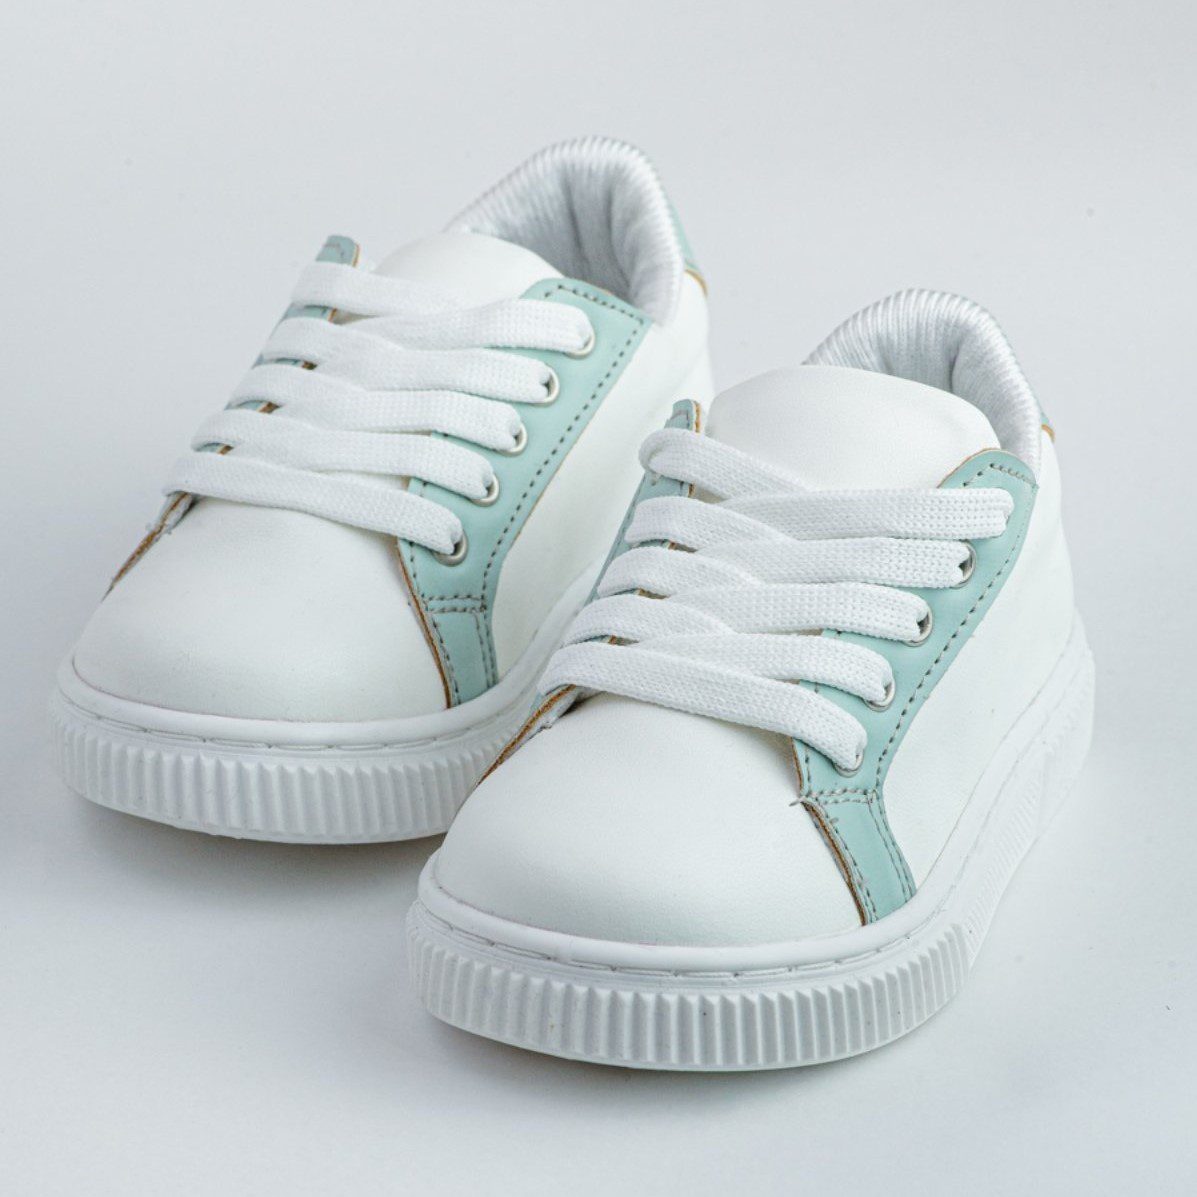 Βαπτιστικά παπούτσια τύπου sneakers, σε άσπρο με πράσινο της μέντας